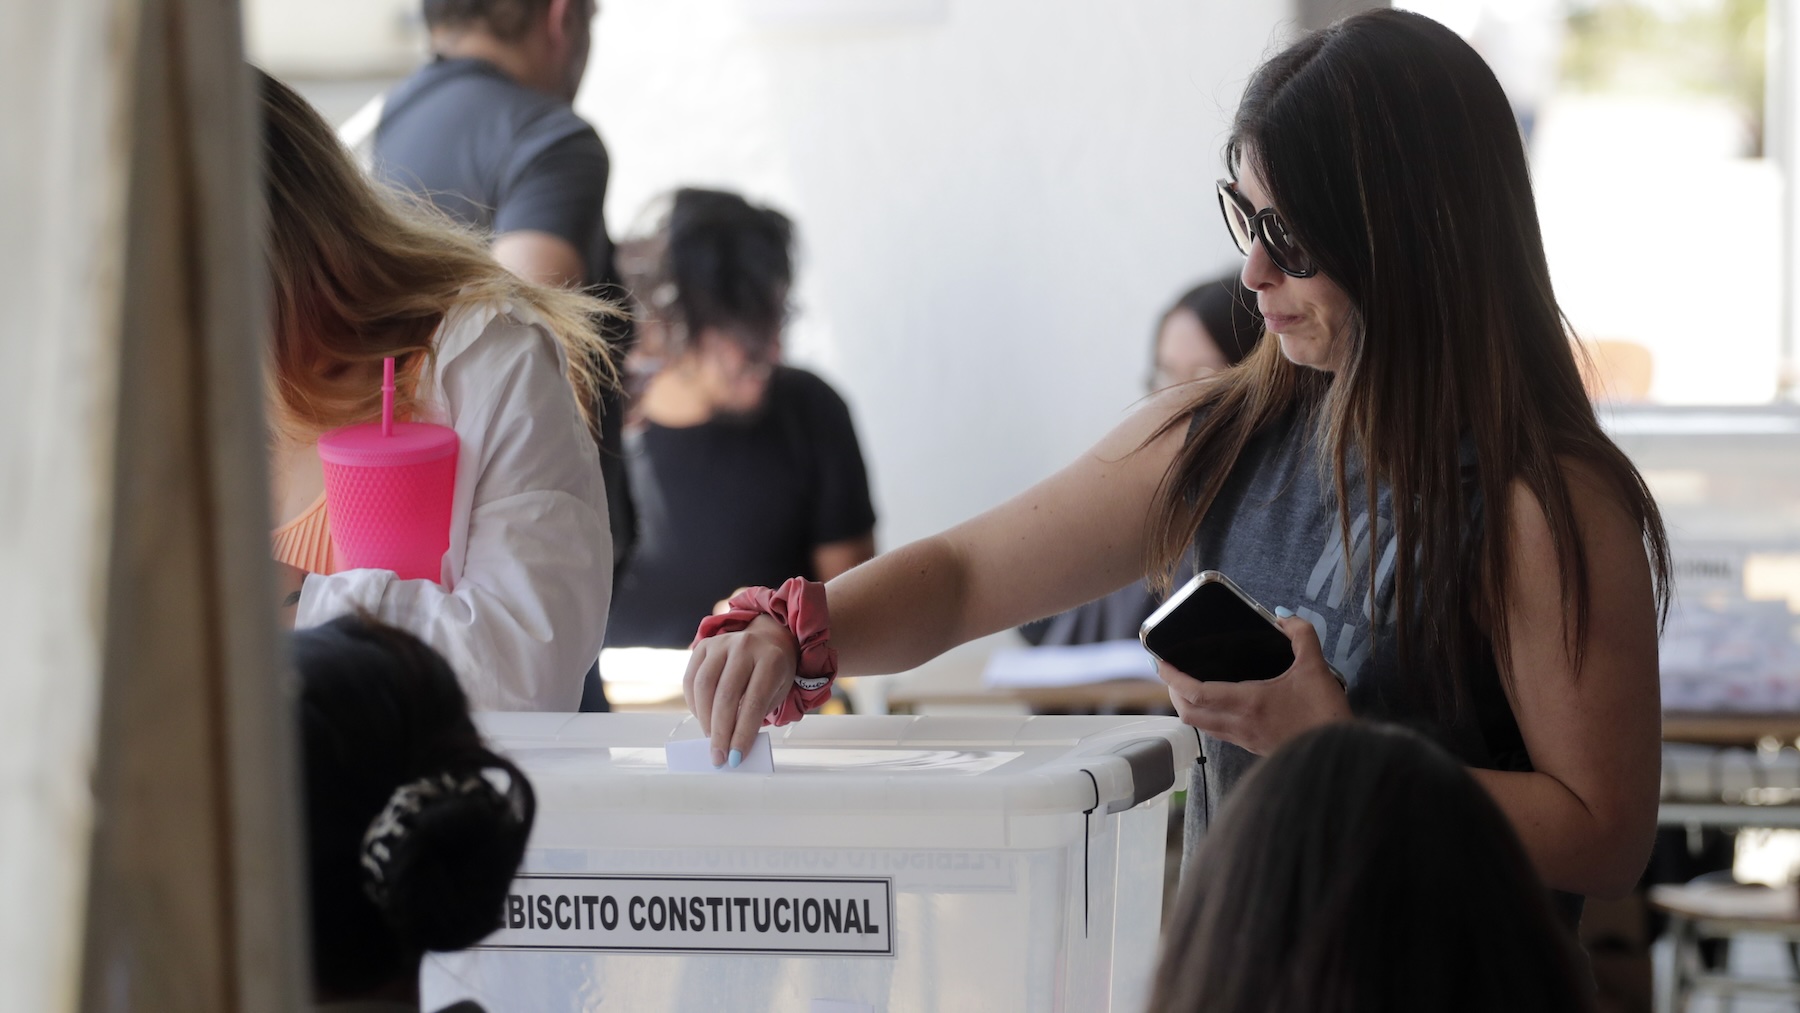 Una chilena deposita su voto en el plebiscito constitucional. (Foto: Efe)